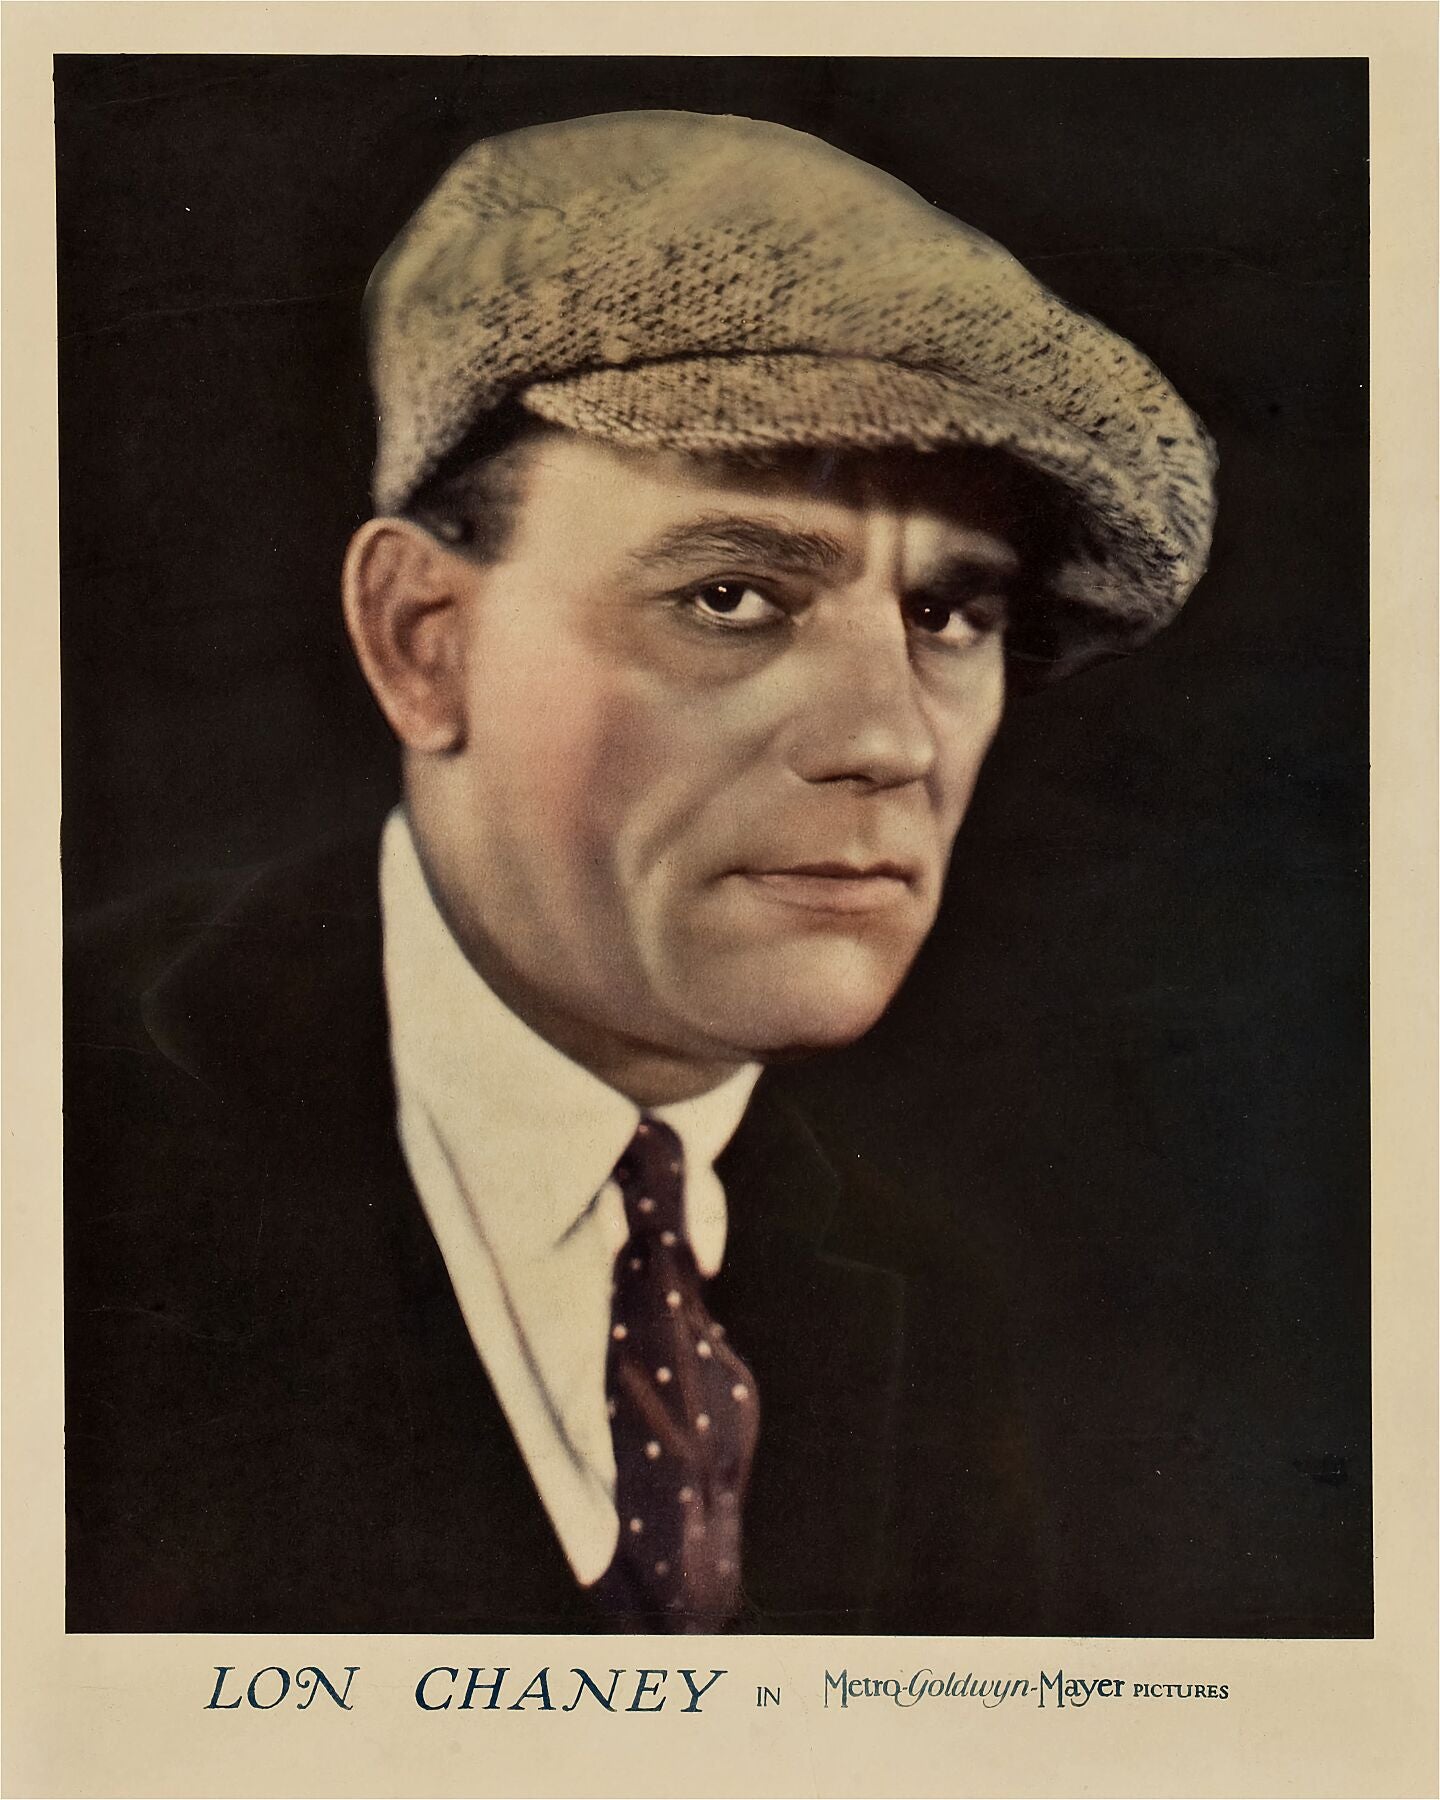 Lon Chaney at MGM - 1926